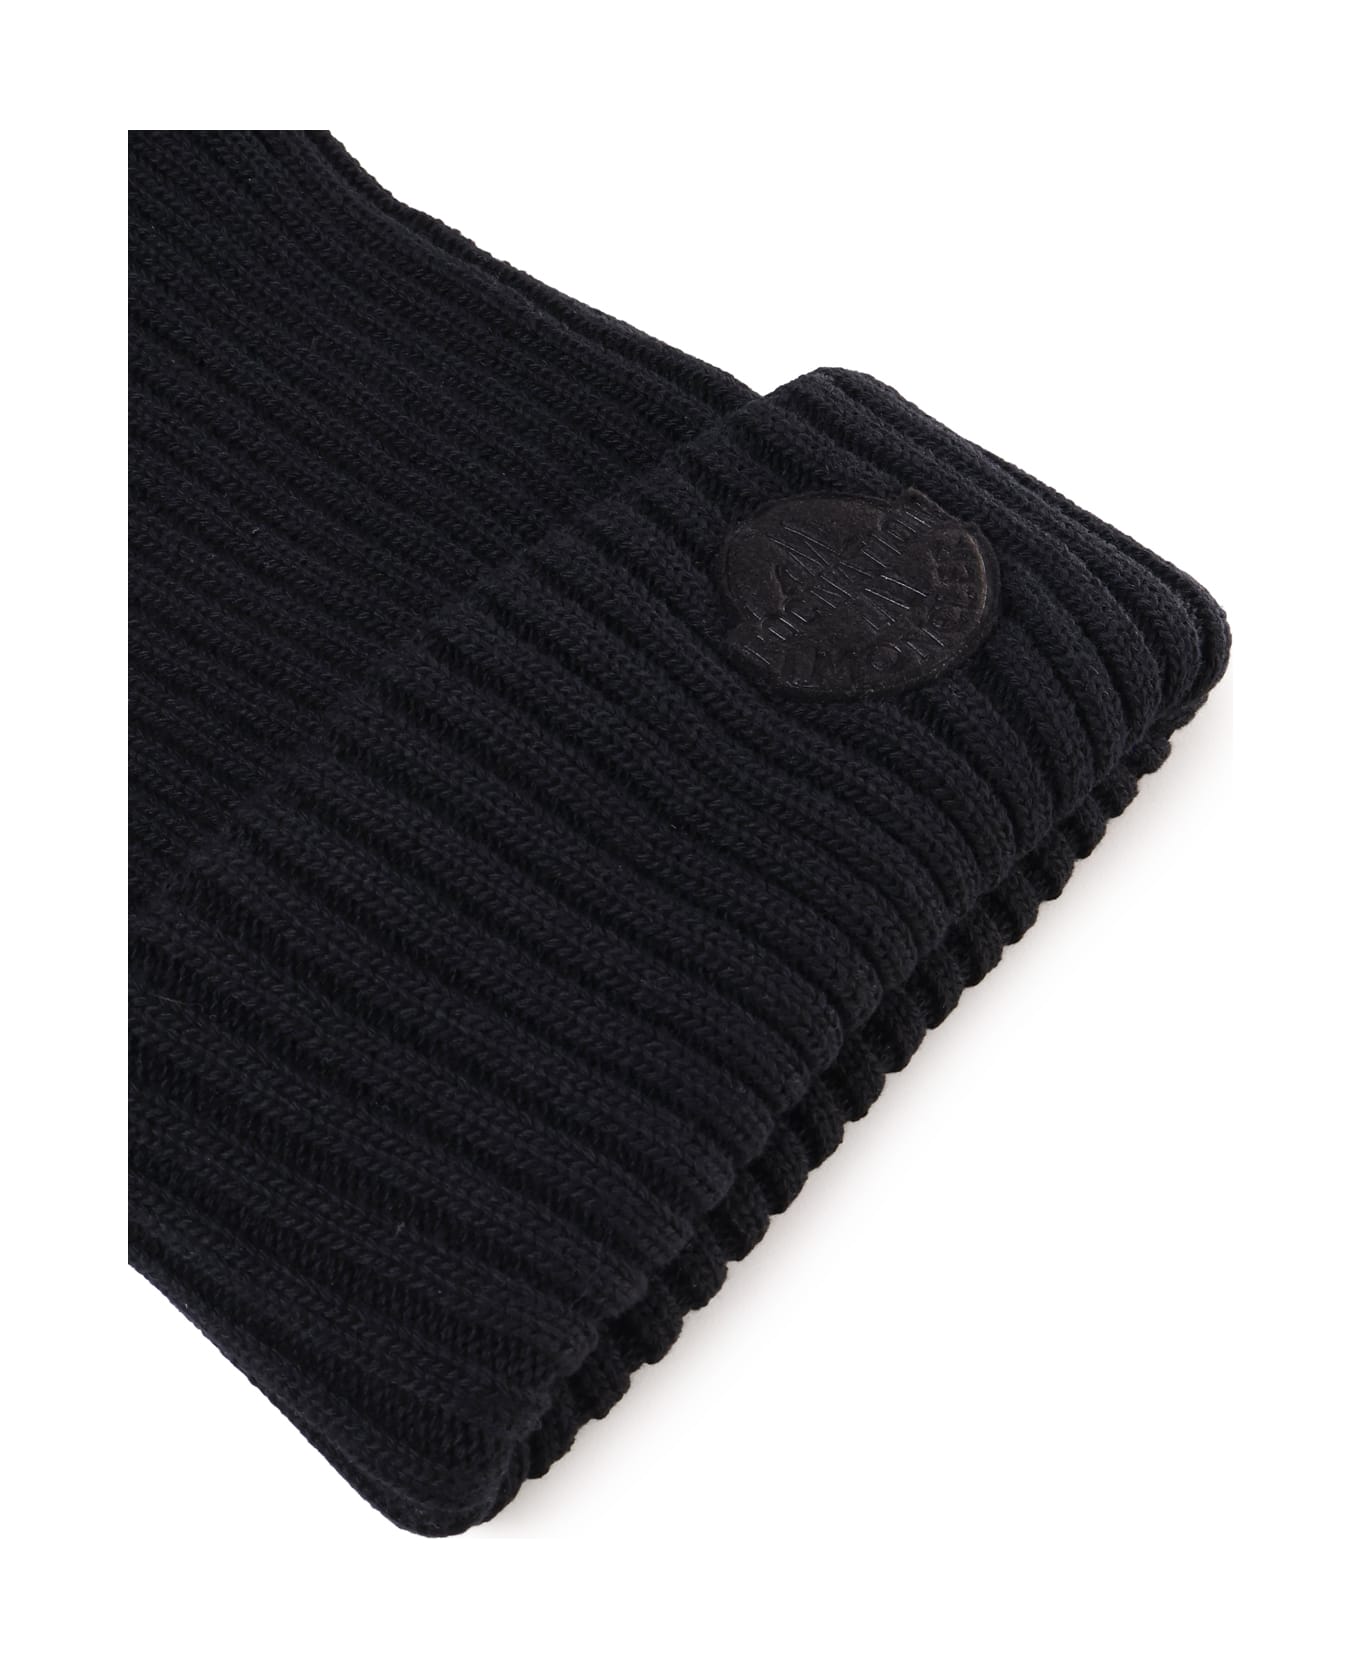 Moncler Genius Wool Cap - Black 帽子